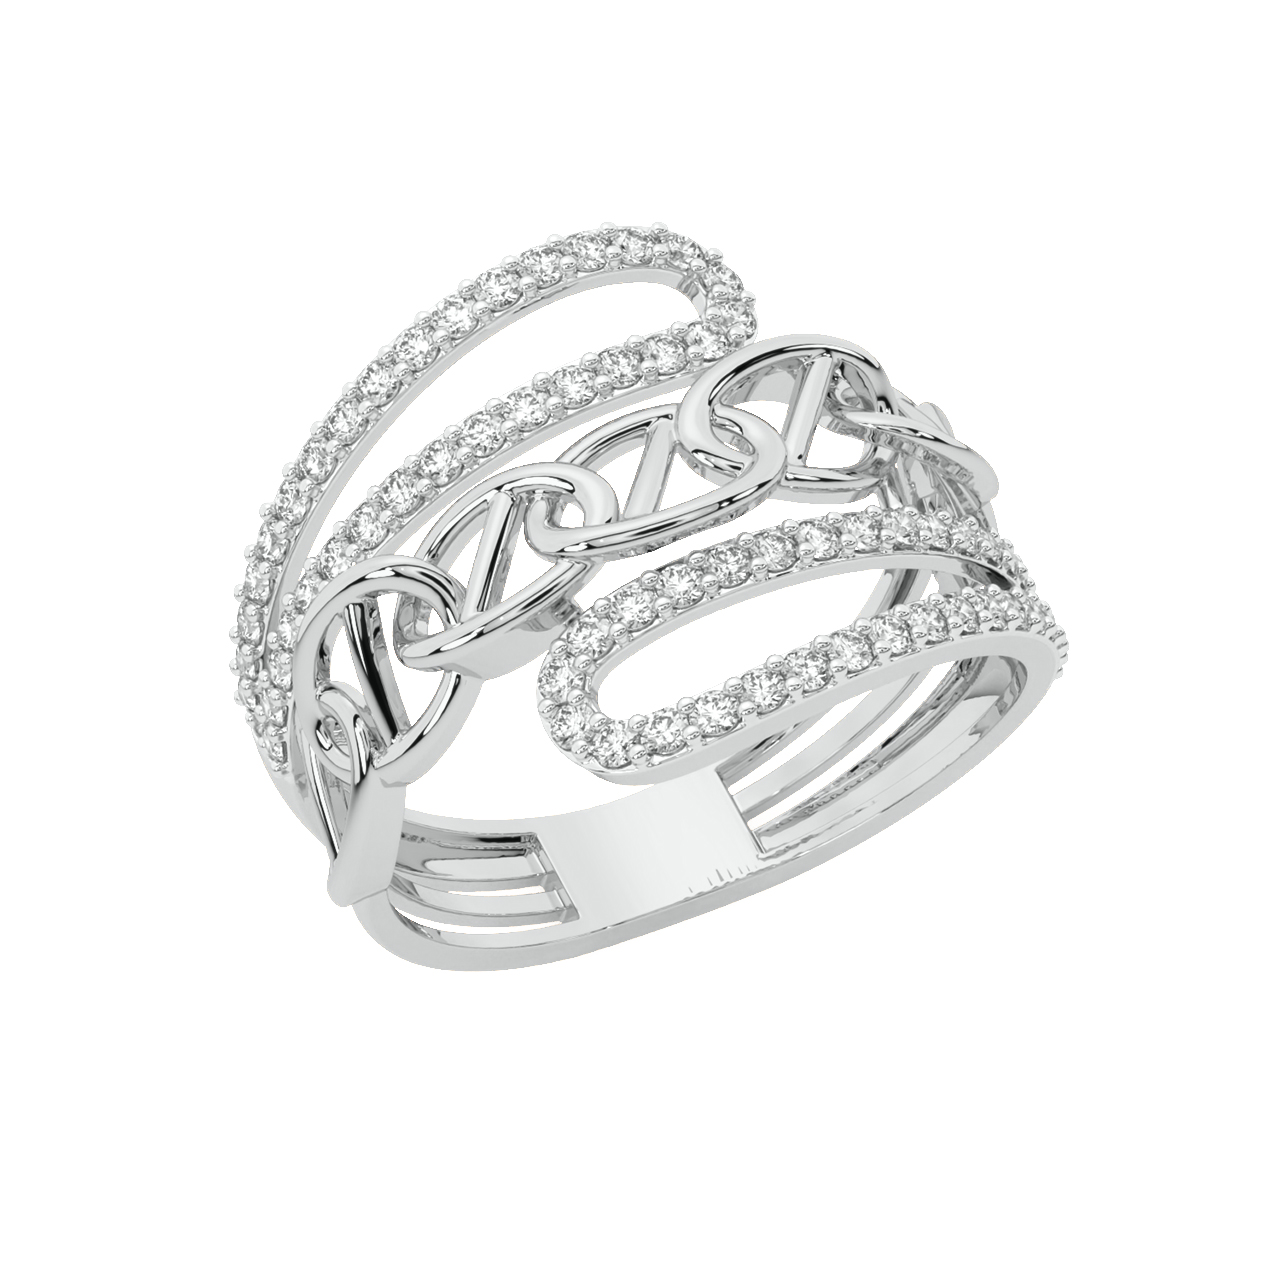 White Gold Vintage Style Diamond Fashion Ring